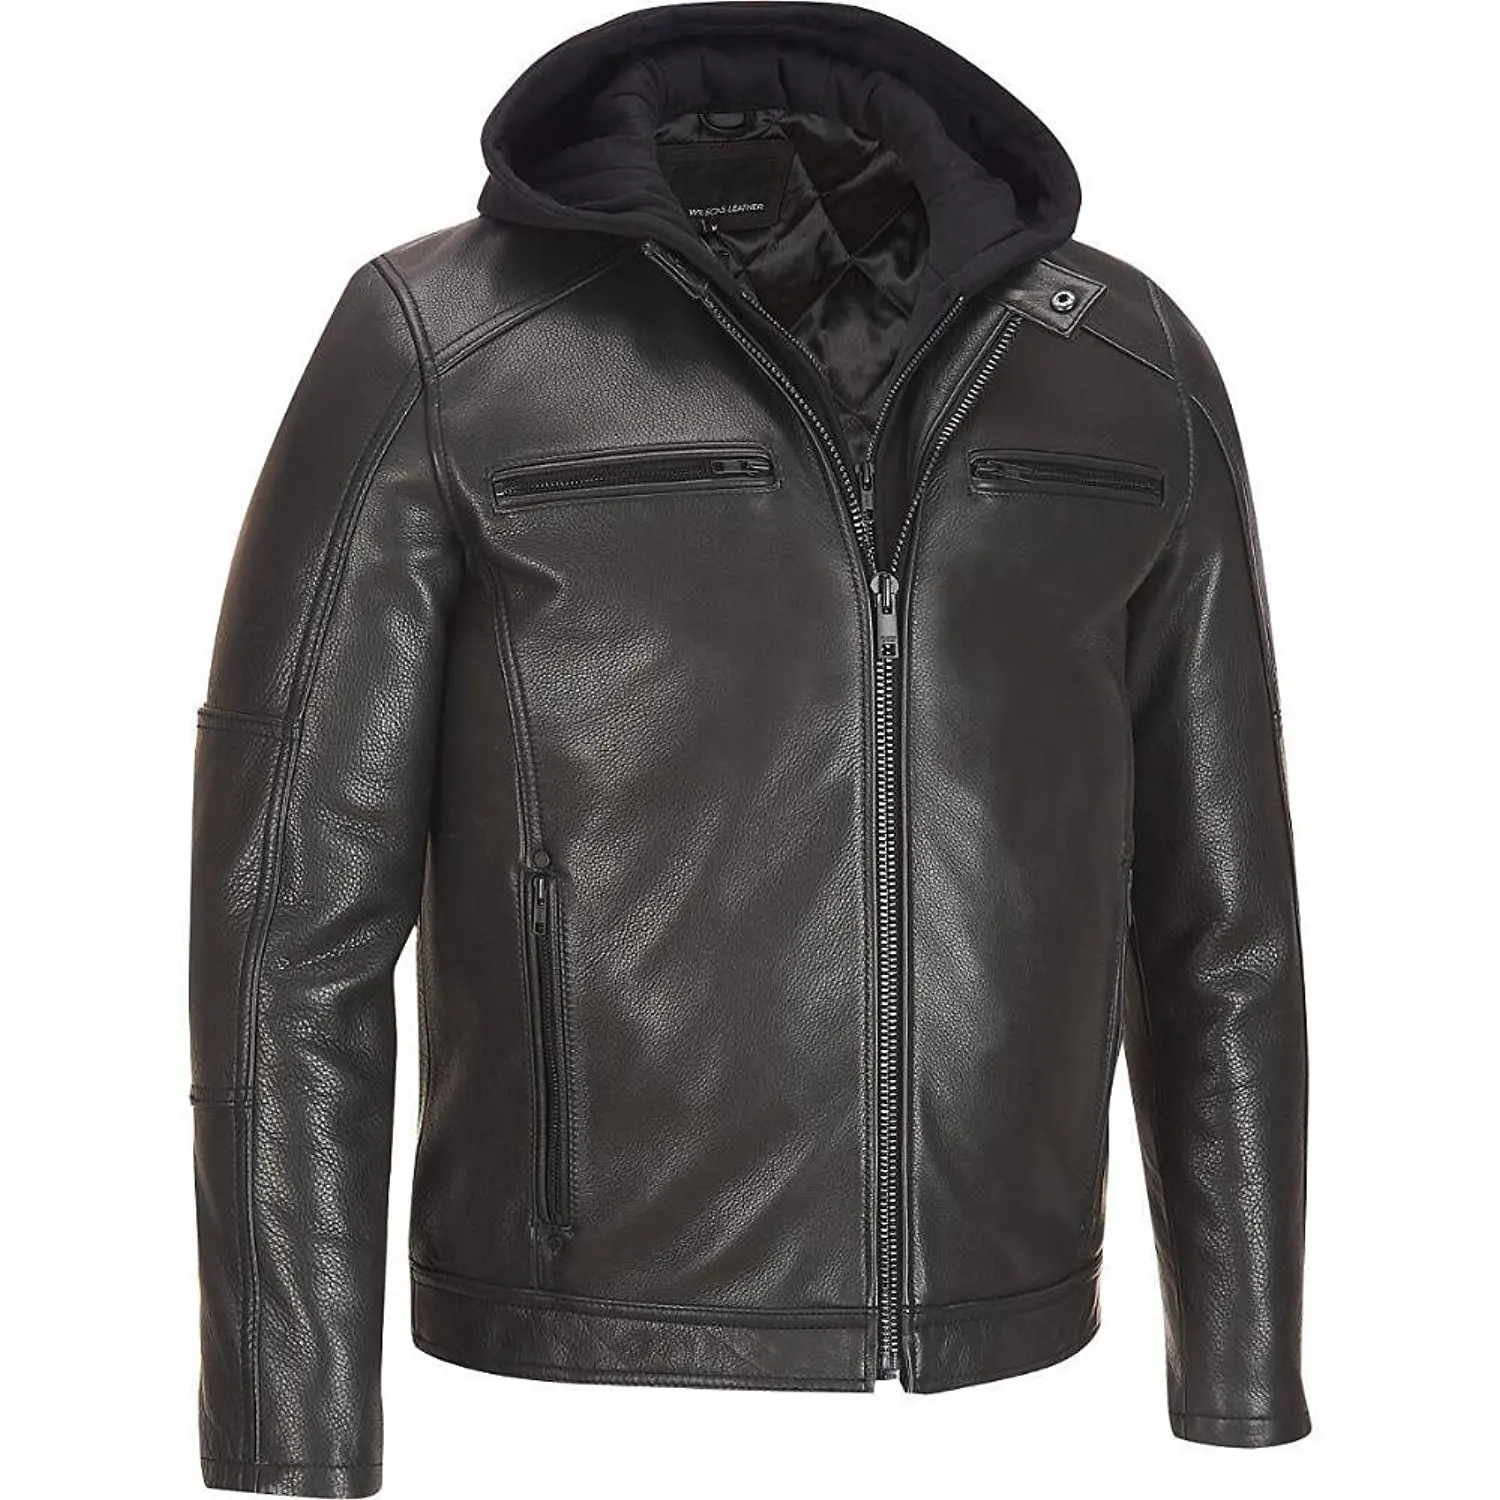 Купить качественную кожаную куртку. Кожаная куртка Leather Air Jacket 38118. Алеф кожаные куртки мужские. Куртка Radloff 1927 кожаная мужская. Wilsons Leather куртка.